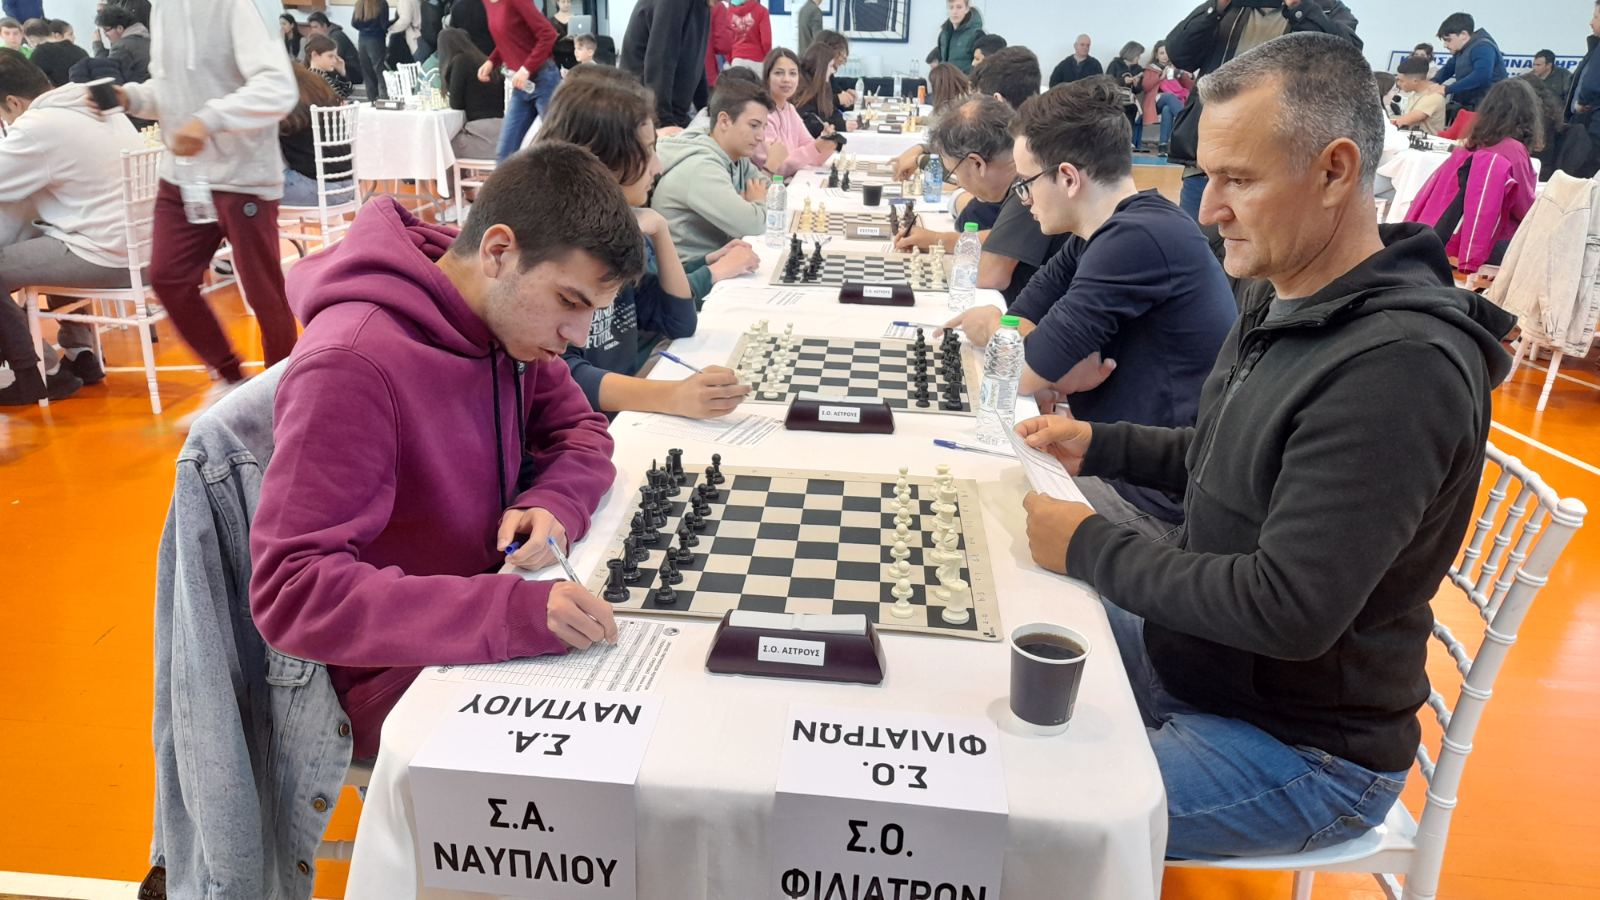 Ξυλόκαστρο: Ποιες ομάδες ξεχώρισαν στο σκακιστικό πρωτάθλημα Πελοποννήσου